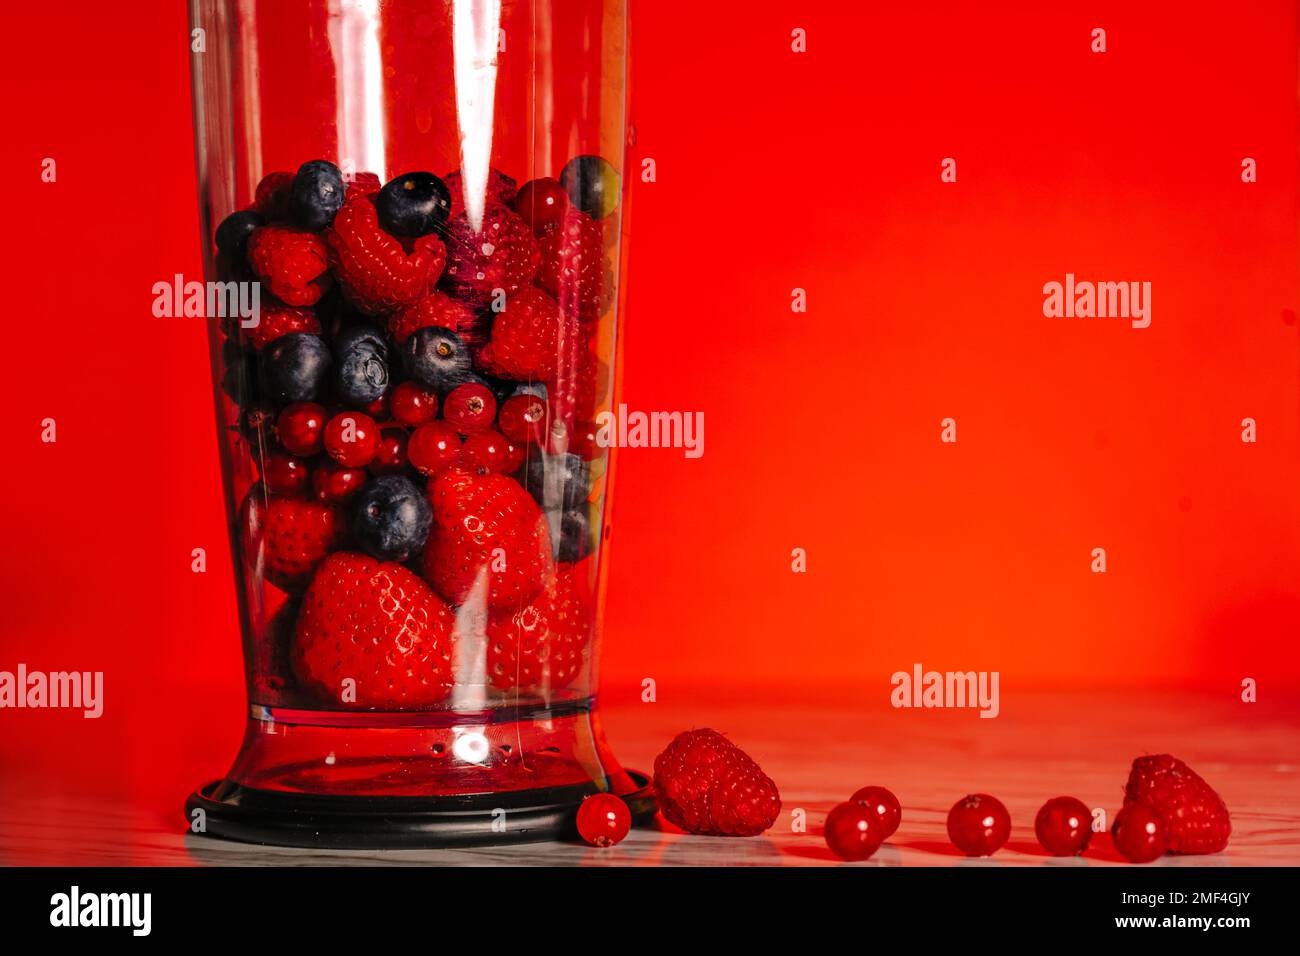 Obst im Mixer, Mixer. Fruchtcocktail und gesunde Speisen und Getränke. Erdbeere, Himbeere, Heidelbeere. Diät und Vitamine für die Gesundheit, Diät Smoothie n Stockfoto